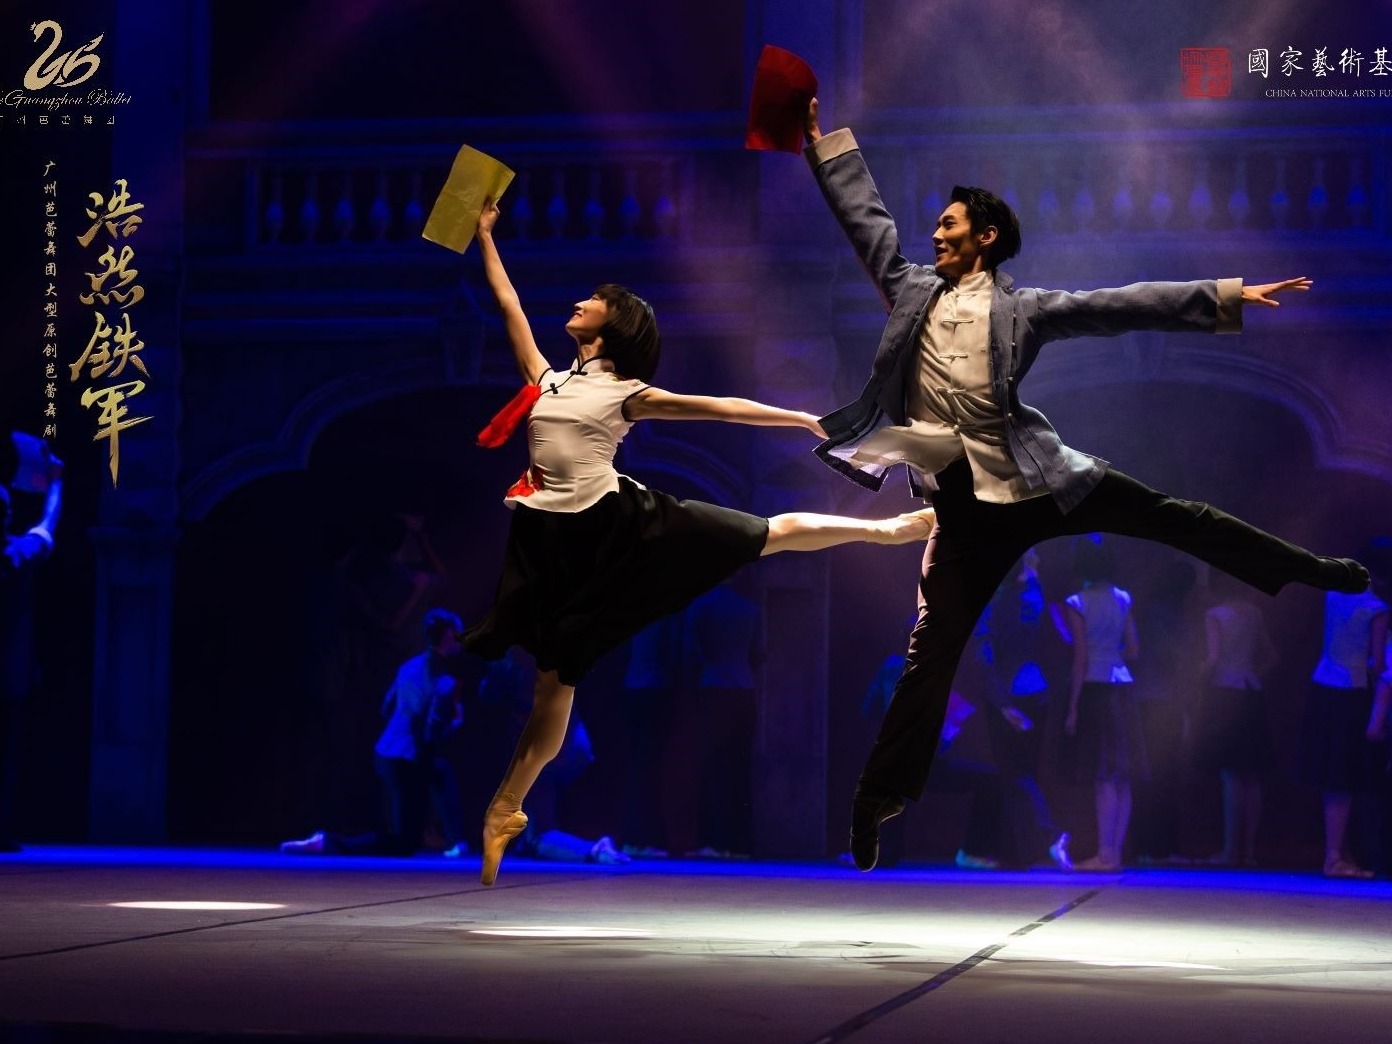 《浩然铁军》进行最后一次彩排，即将参评第十二届中国舞蹈“荷花奖”决赛